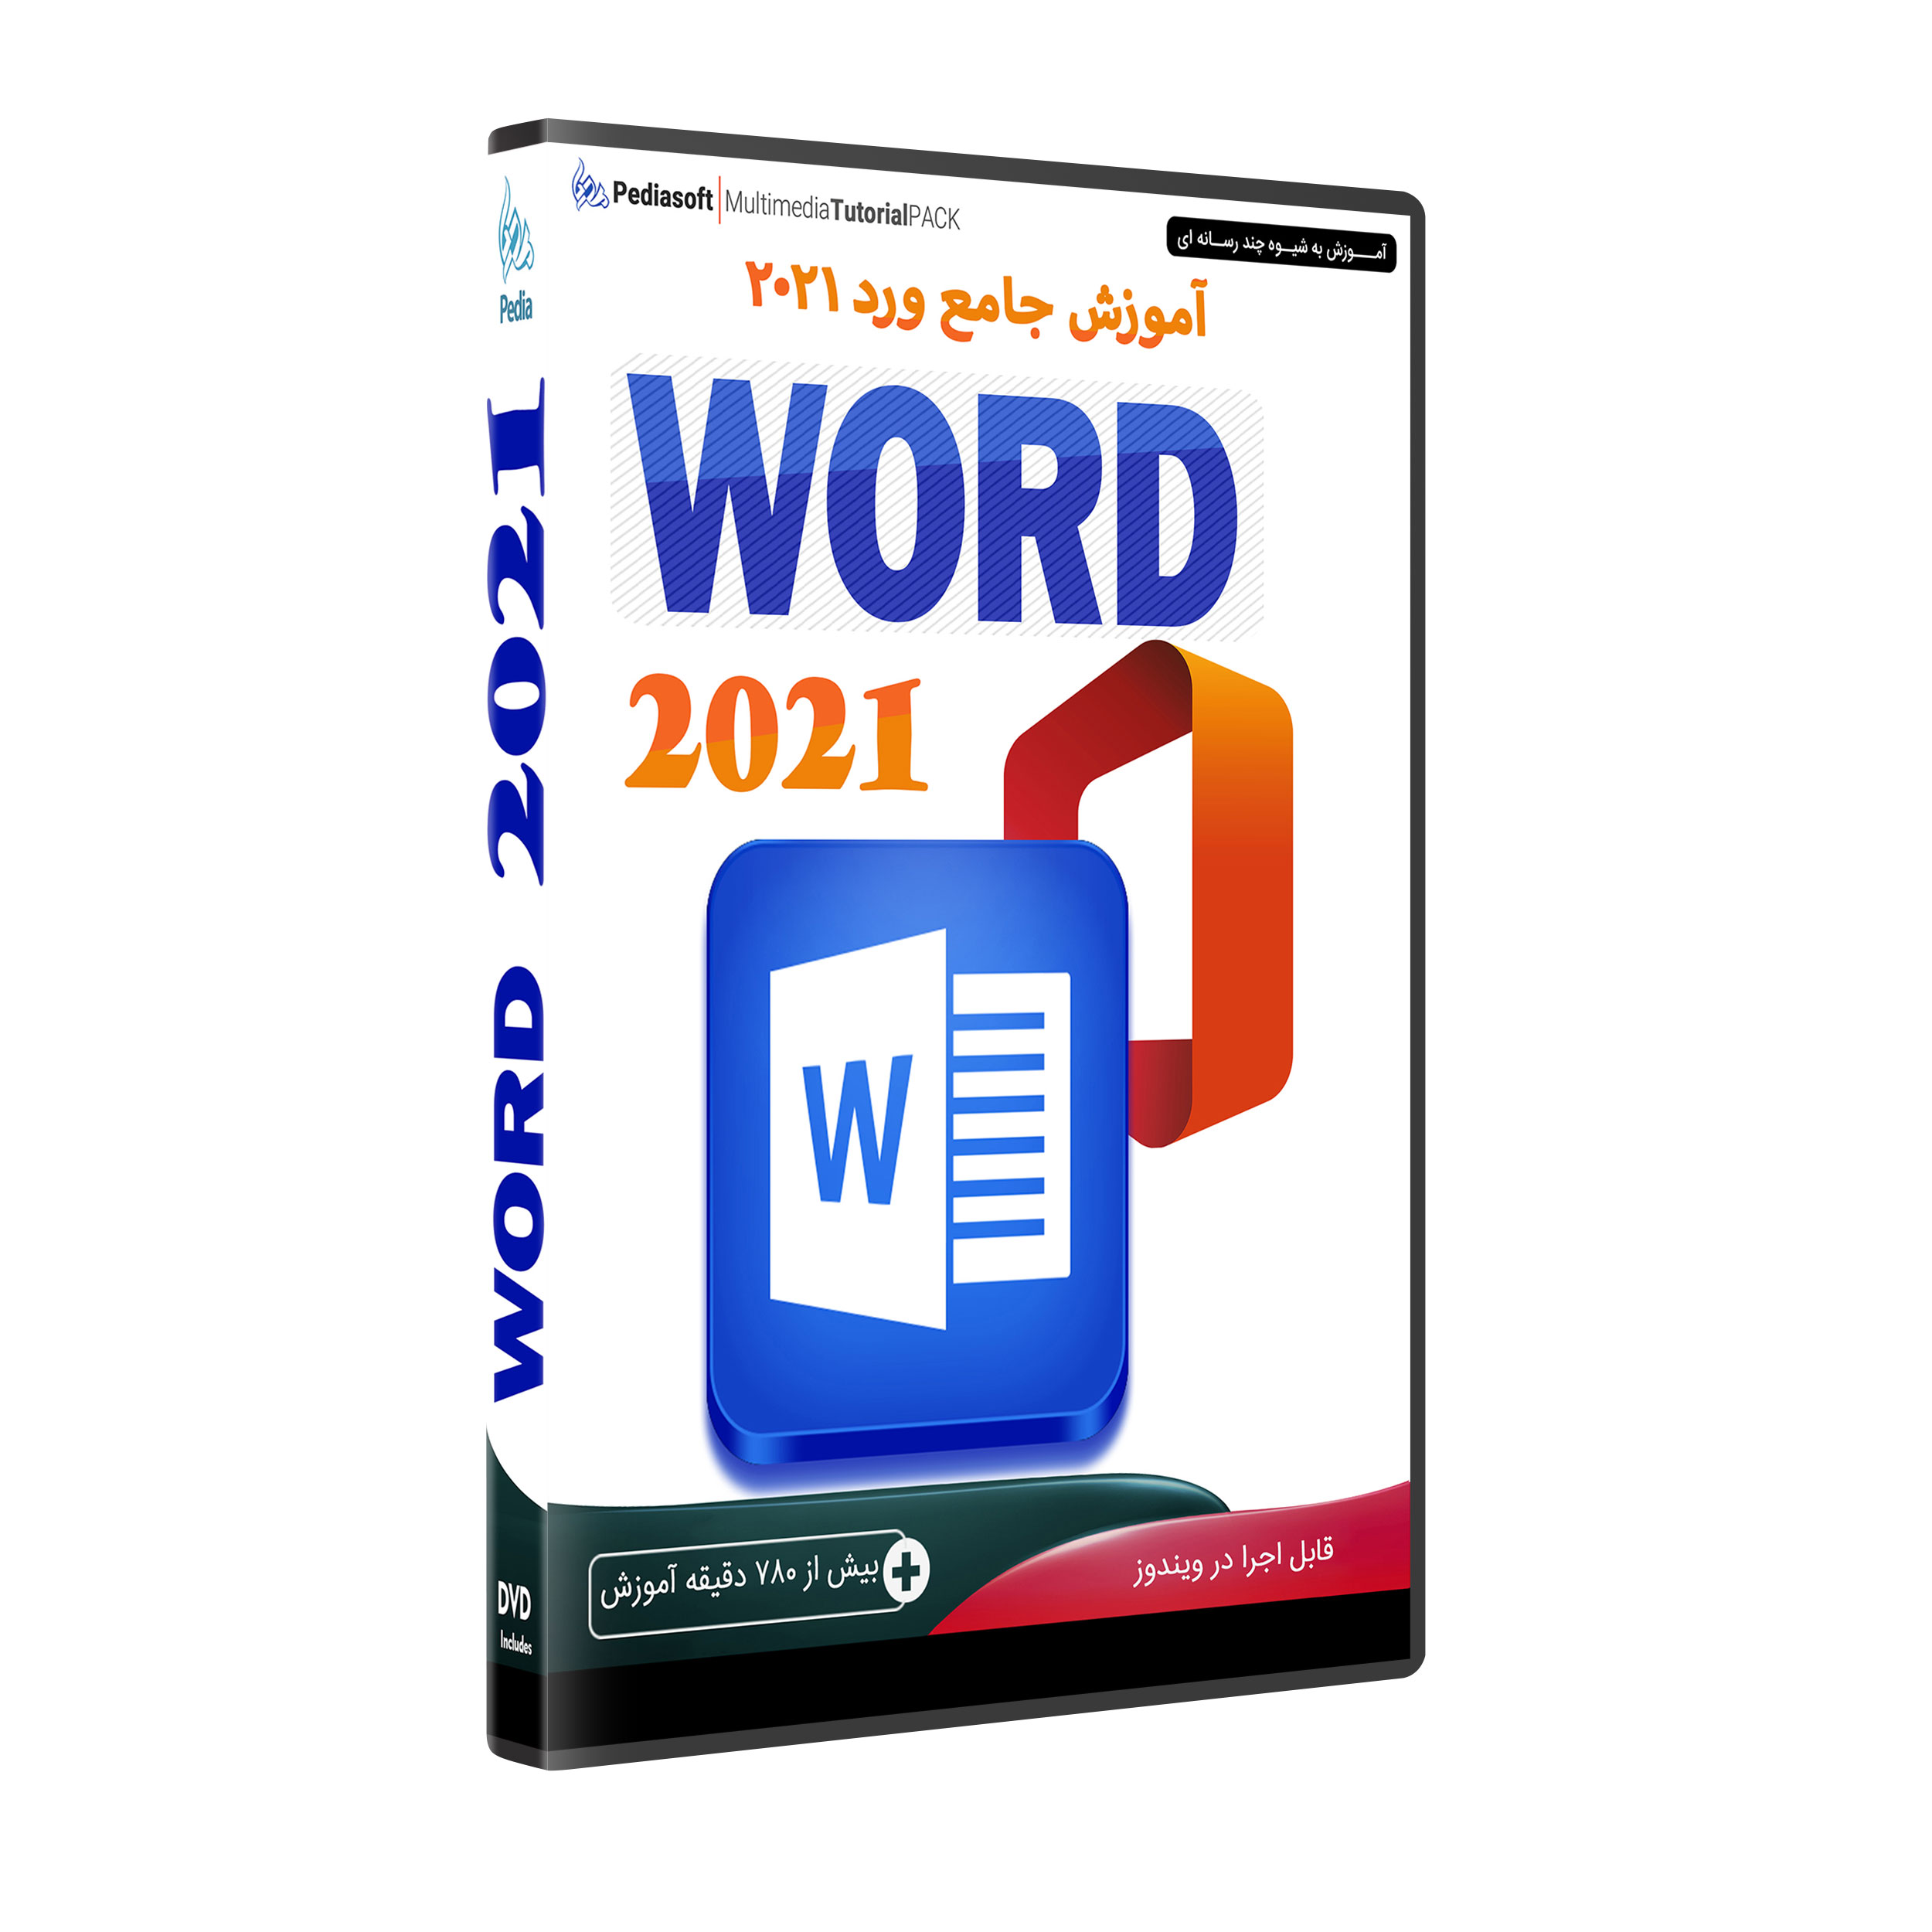 نرم افزار آموزش جامع ورد WORD 2021 نشر پدیا سافت